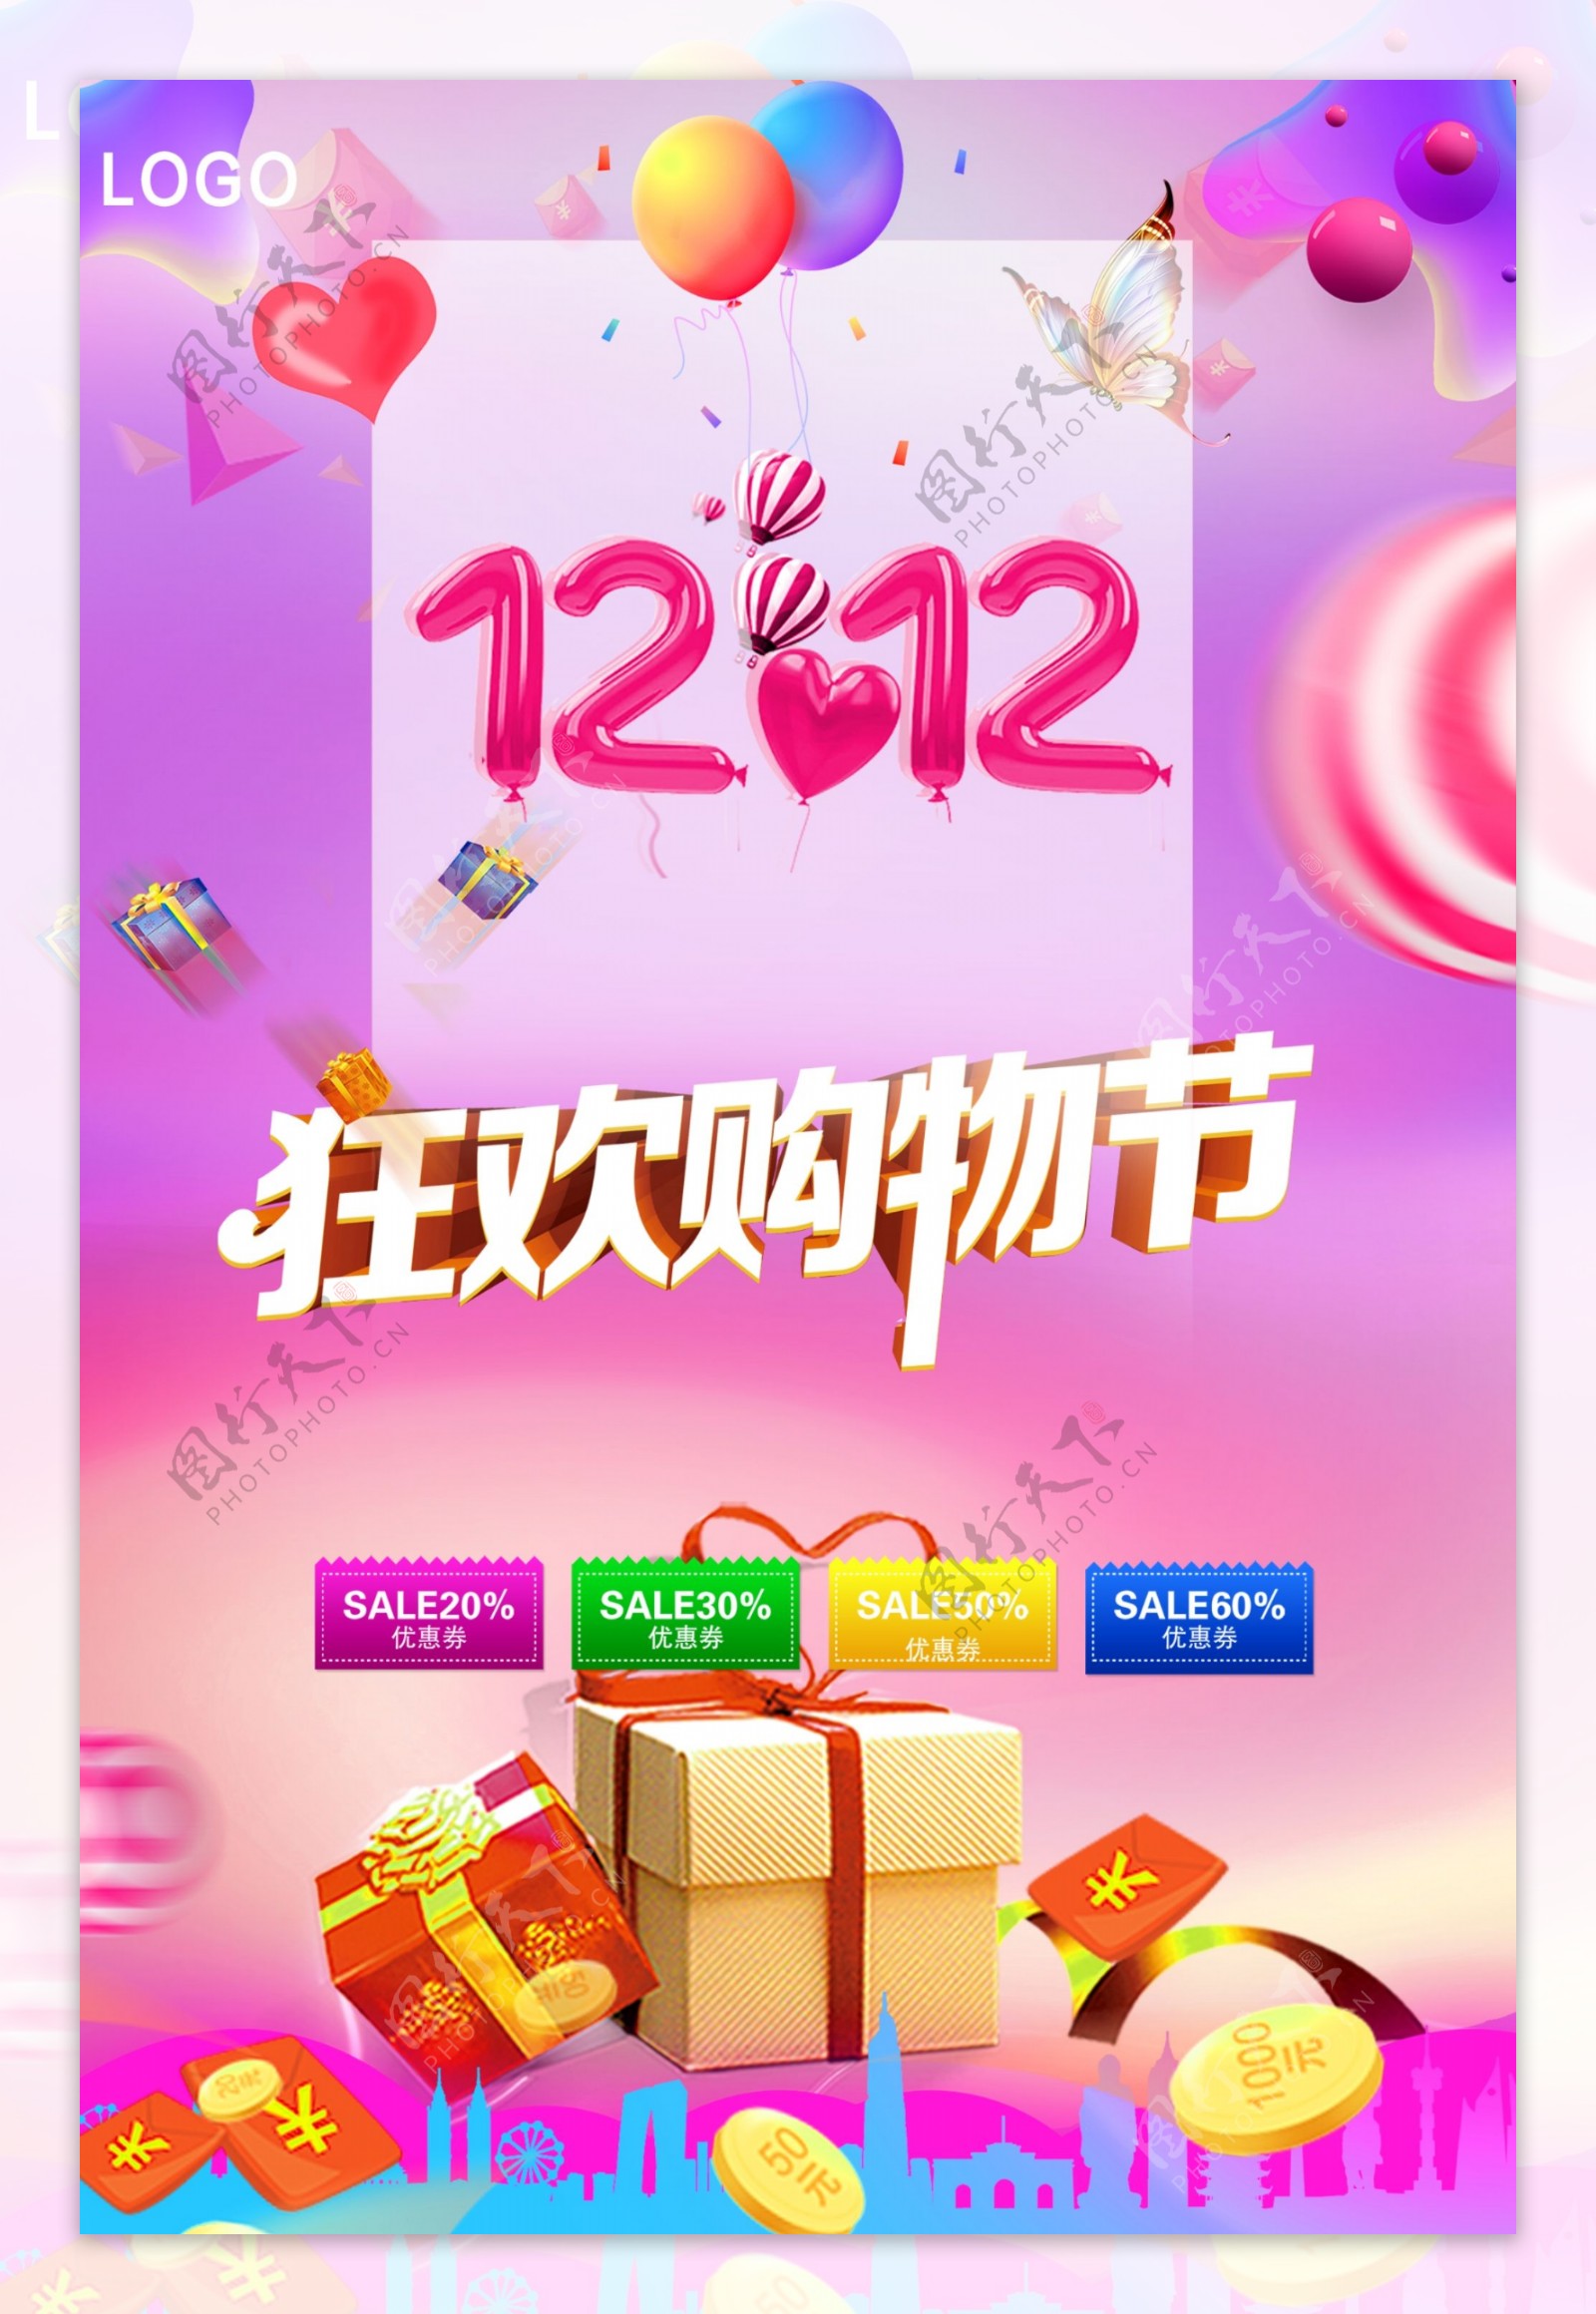 12.12狂欢购物节电商海报